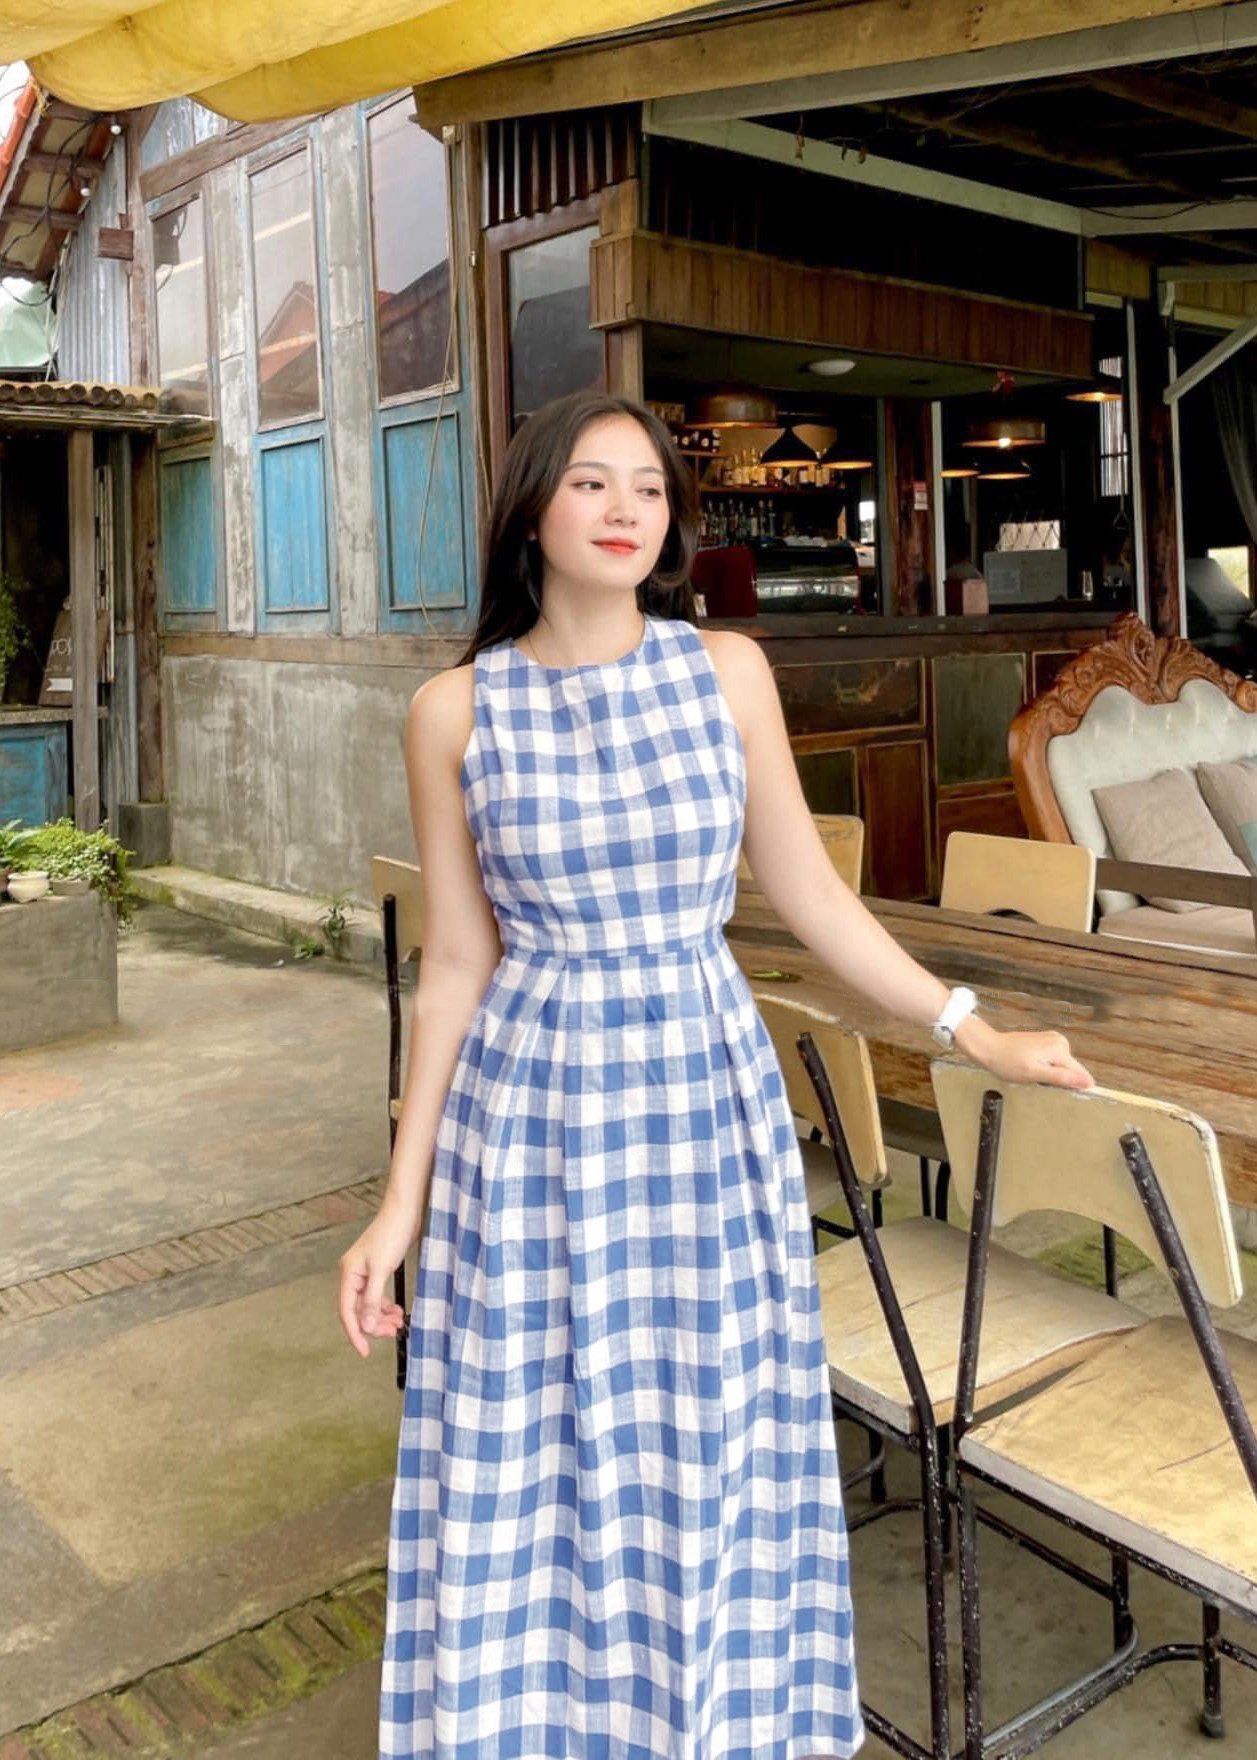 Phong cách thời trang công sở chuẩn Hàn Quốc với mẫu váy đầm caro đẹp